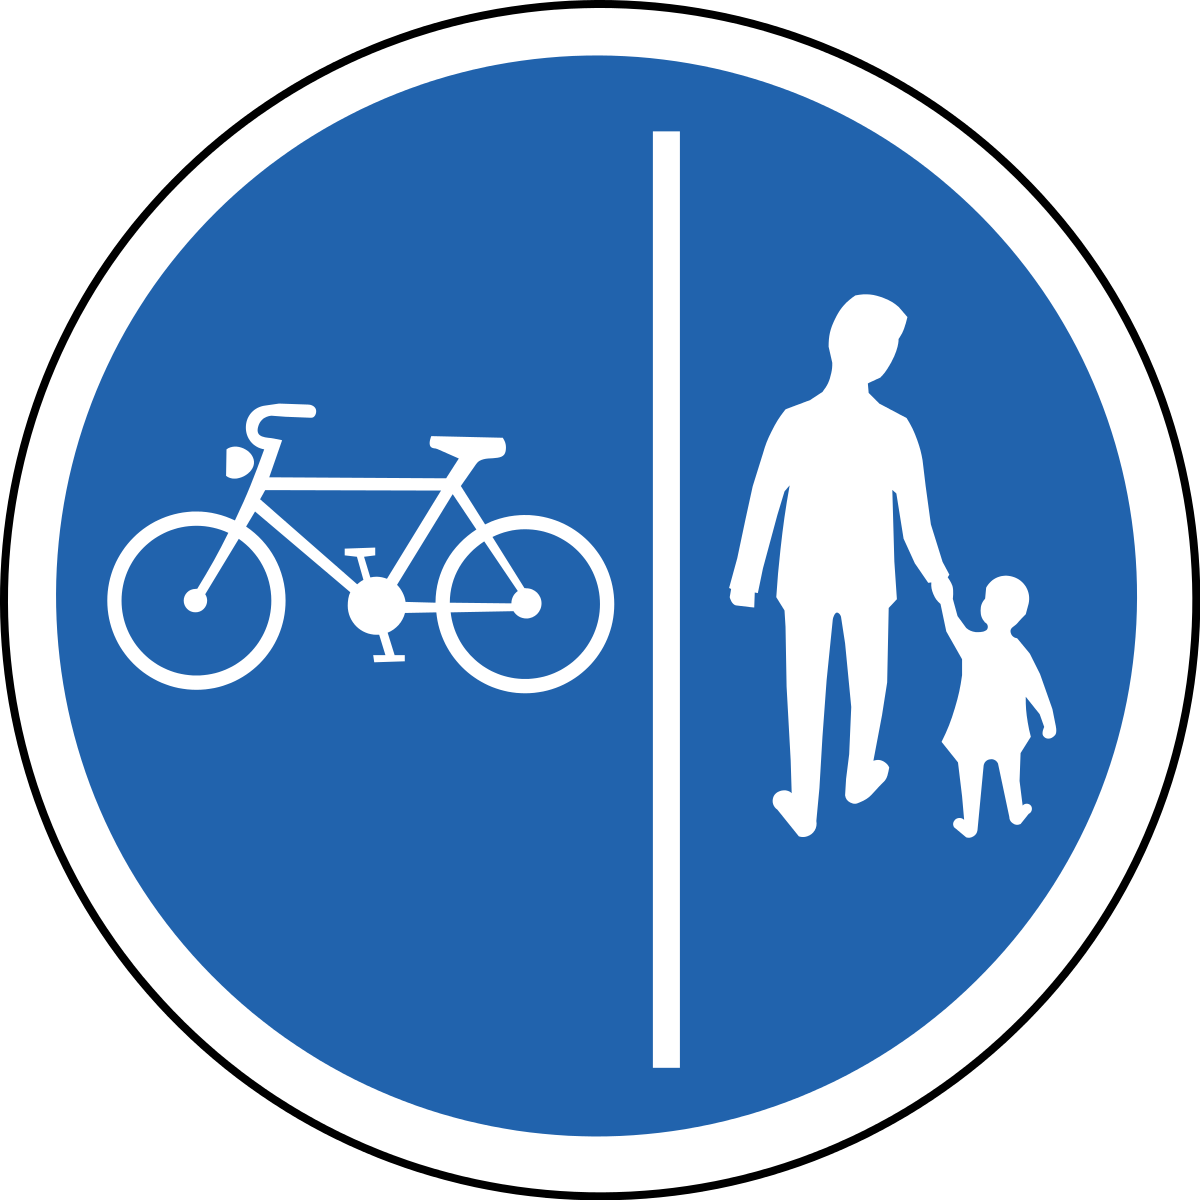 4.4.1 Велосипедная дорожка. Велосипедная дорожка дорожный знак. Зак велосипедноц дорожки. Дорожные знаки для детей велосипедная дорожка. Велосипедная дорожка мопеды